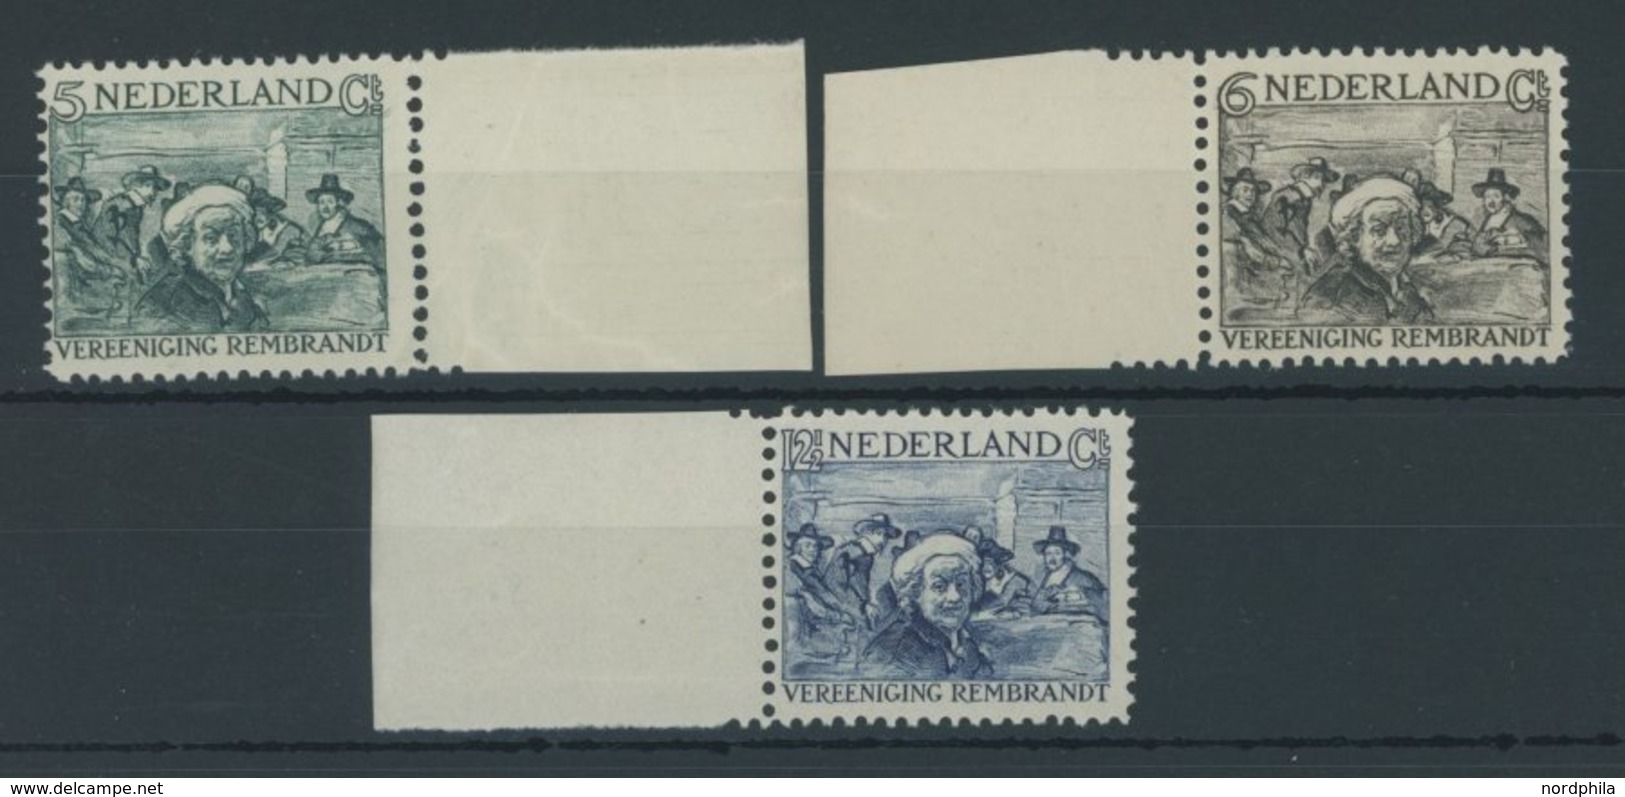 NIEDERLANDE 233-35 **, 1930, Vereinigung Rembrandt, Postfrischer Prachtsatz, Mi. 65.- - Pays-Bas